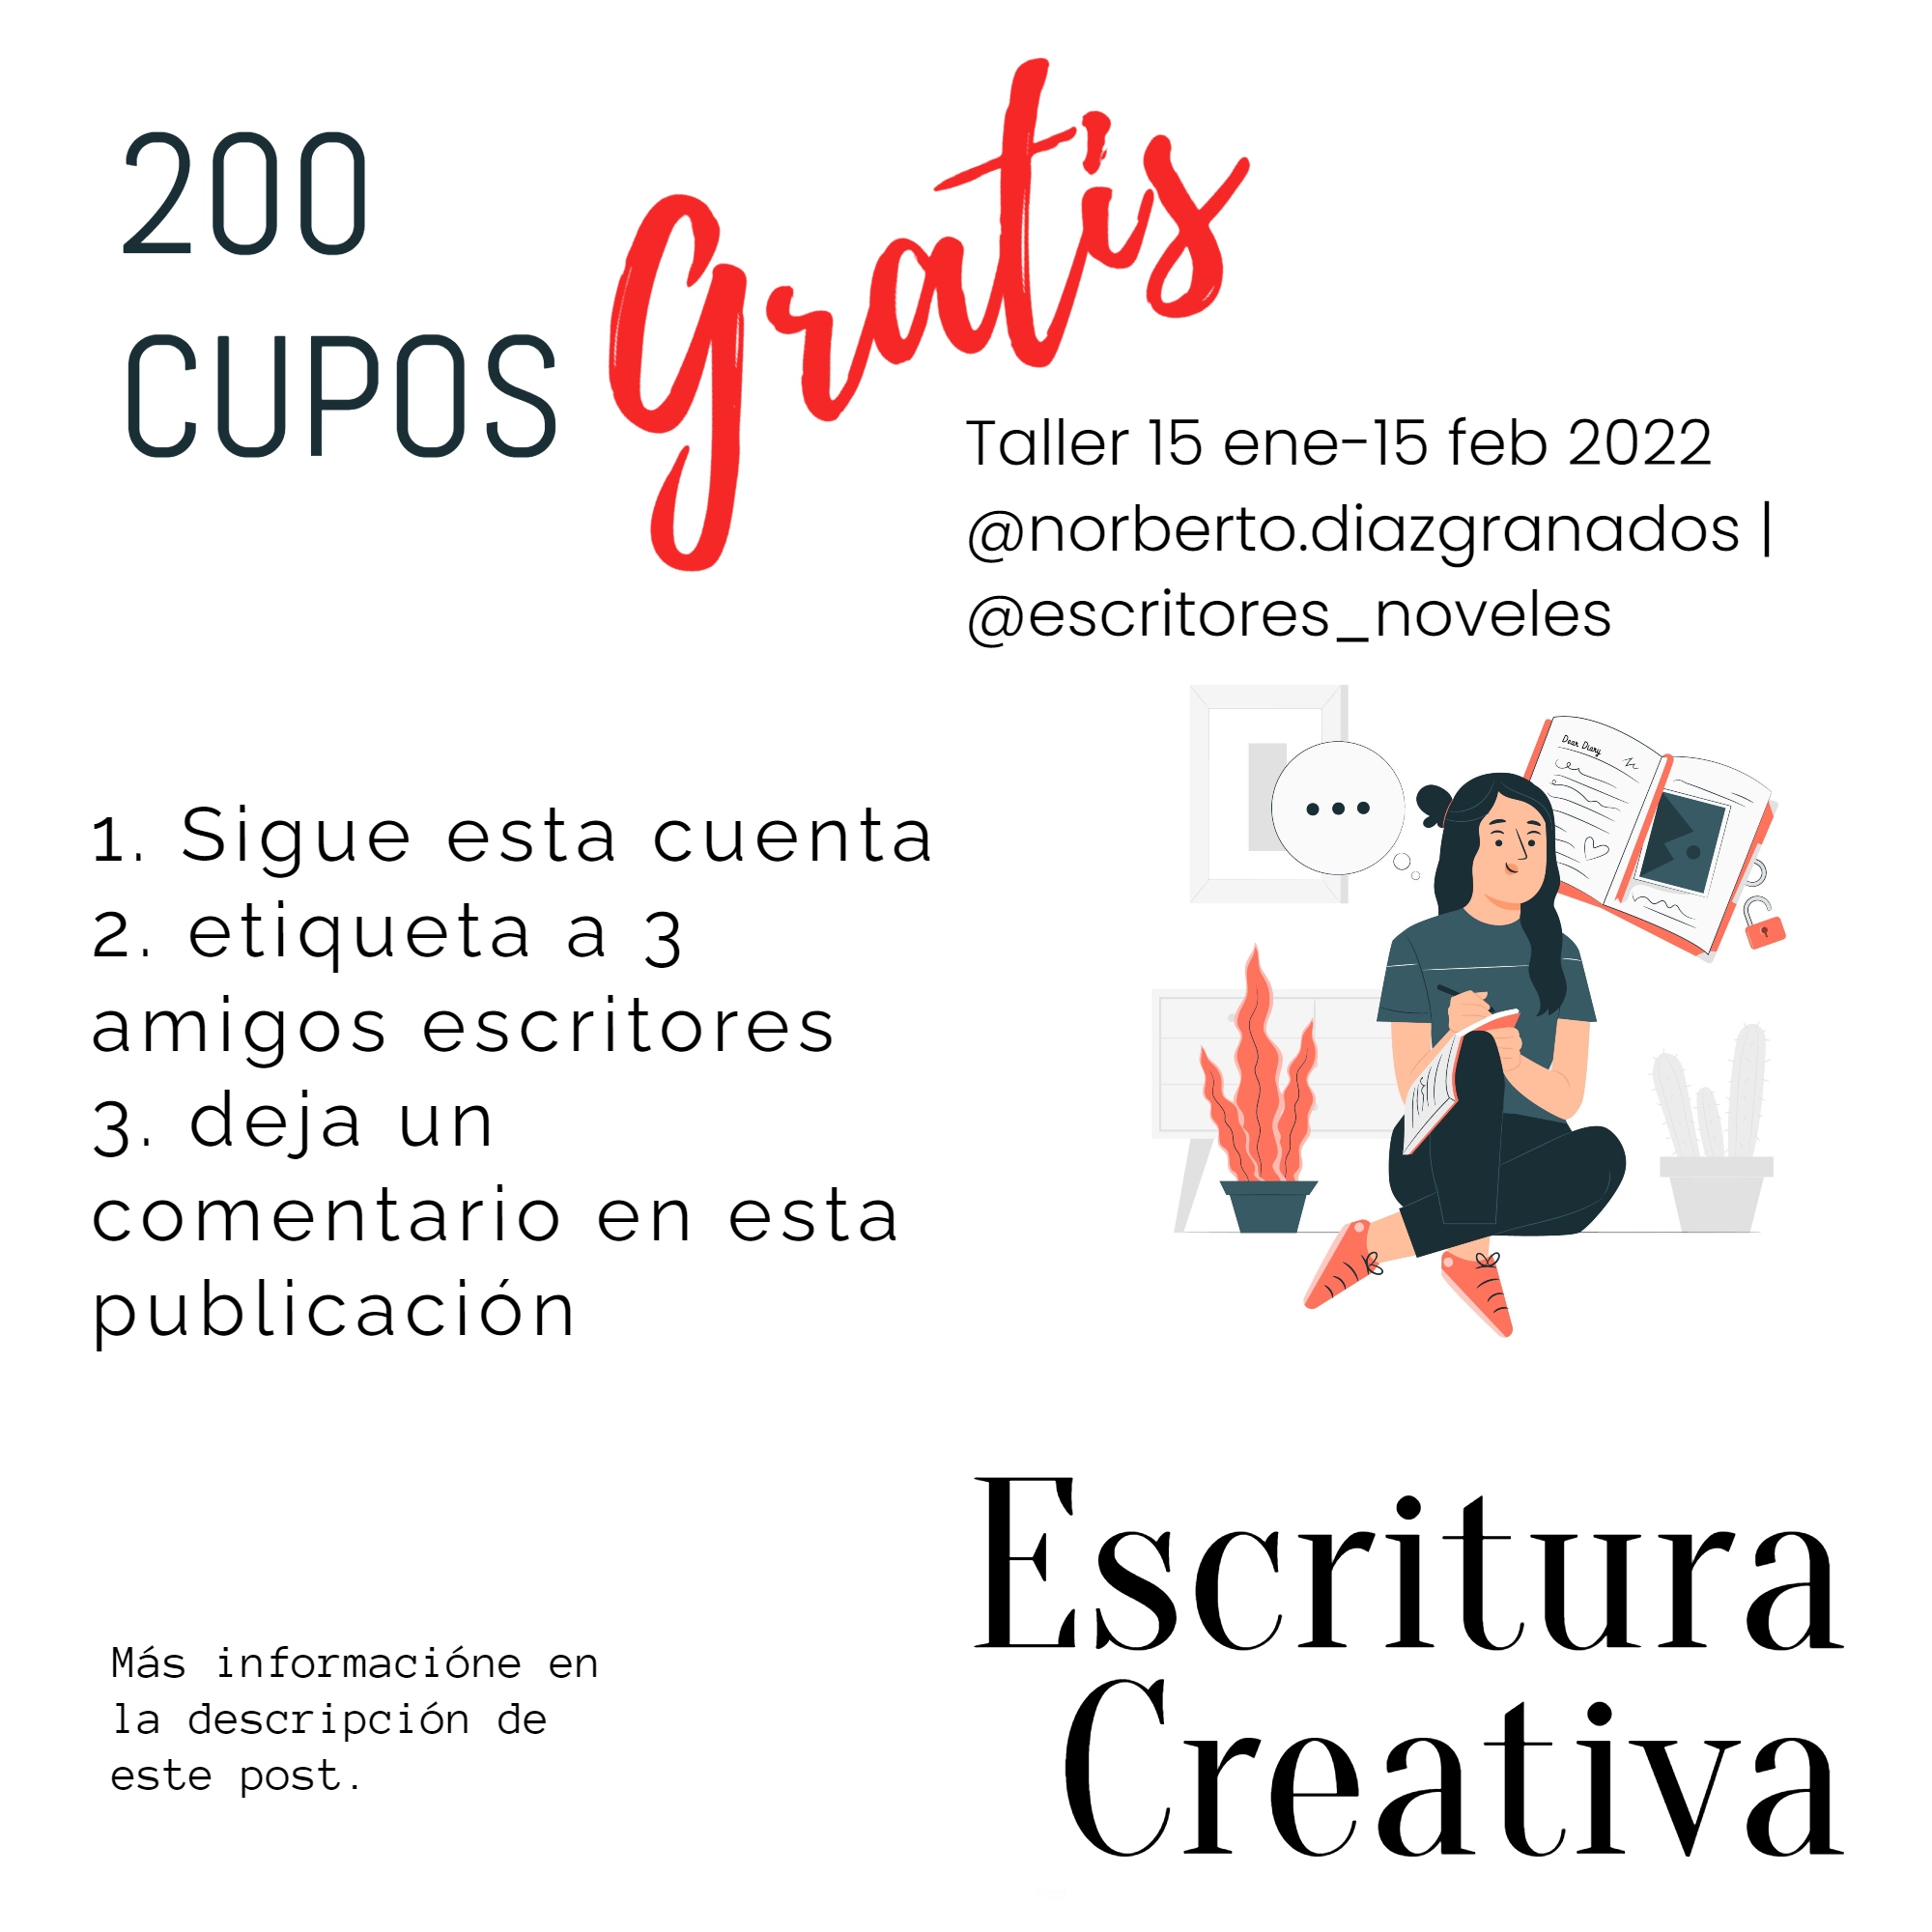 Nuevo taller de escritura Creativa con Norberto Diazgranados en 2022